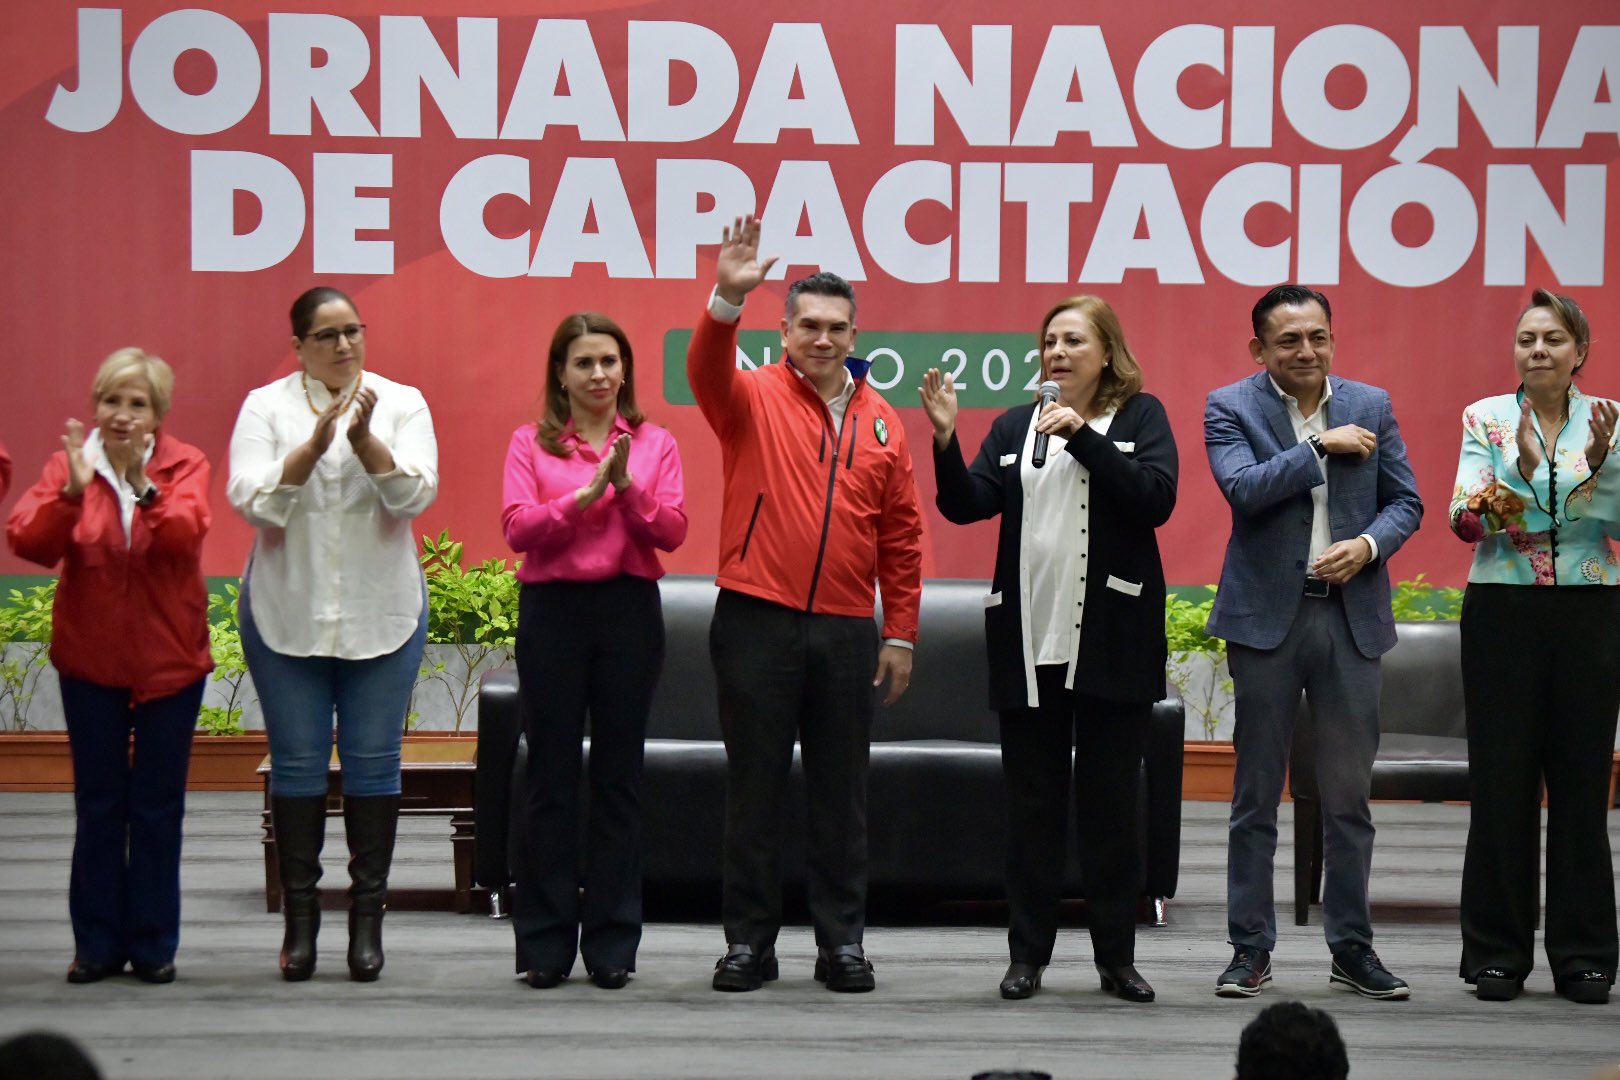 El presidente del PRI se mostró optimista de cara a los procesos electorales (Twitter/@alitomorenoc)